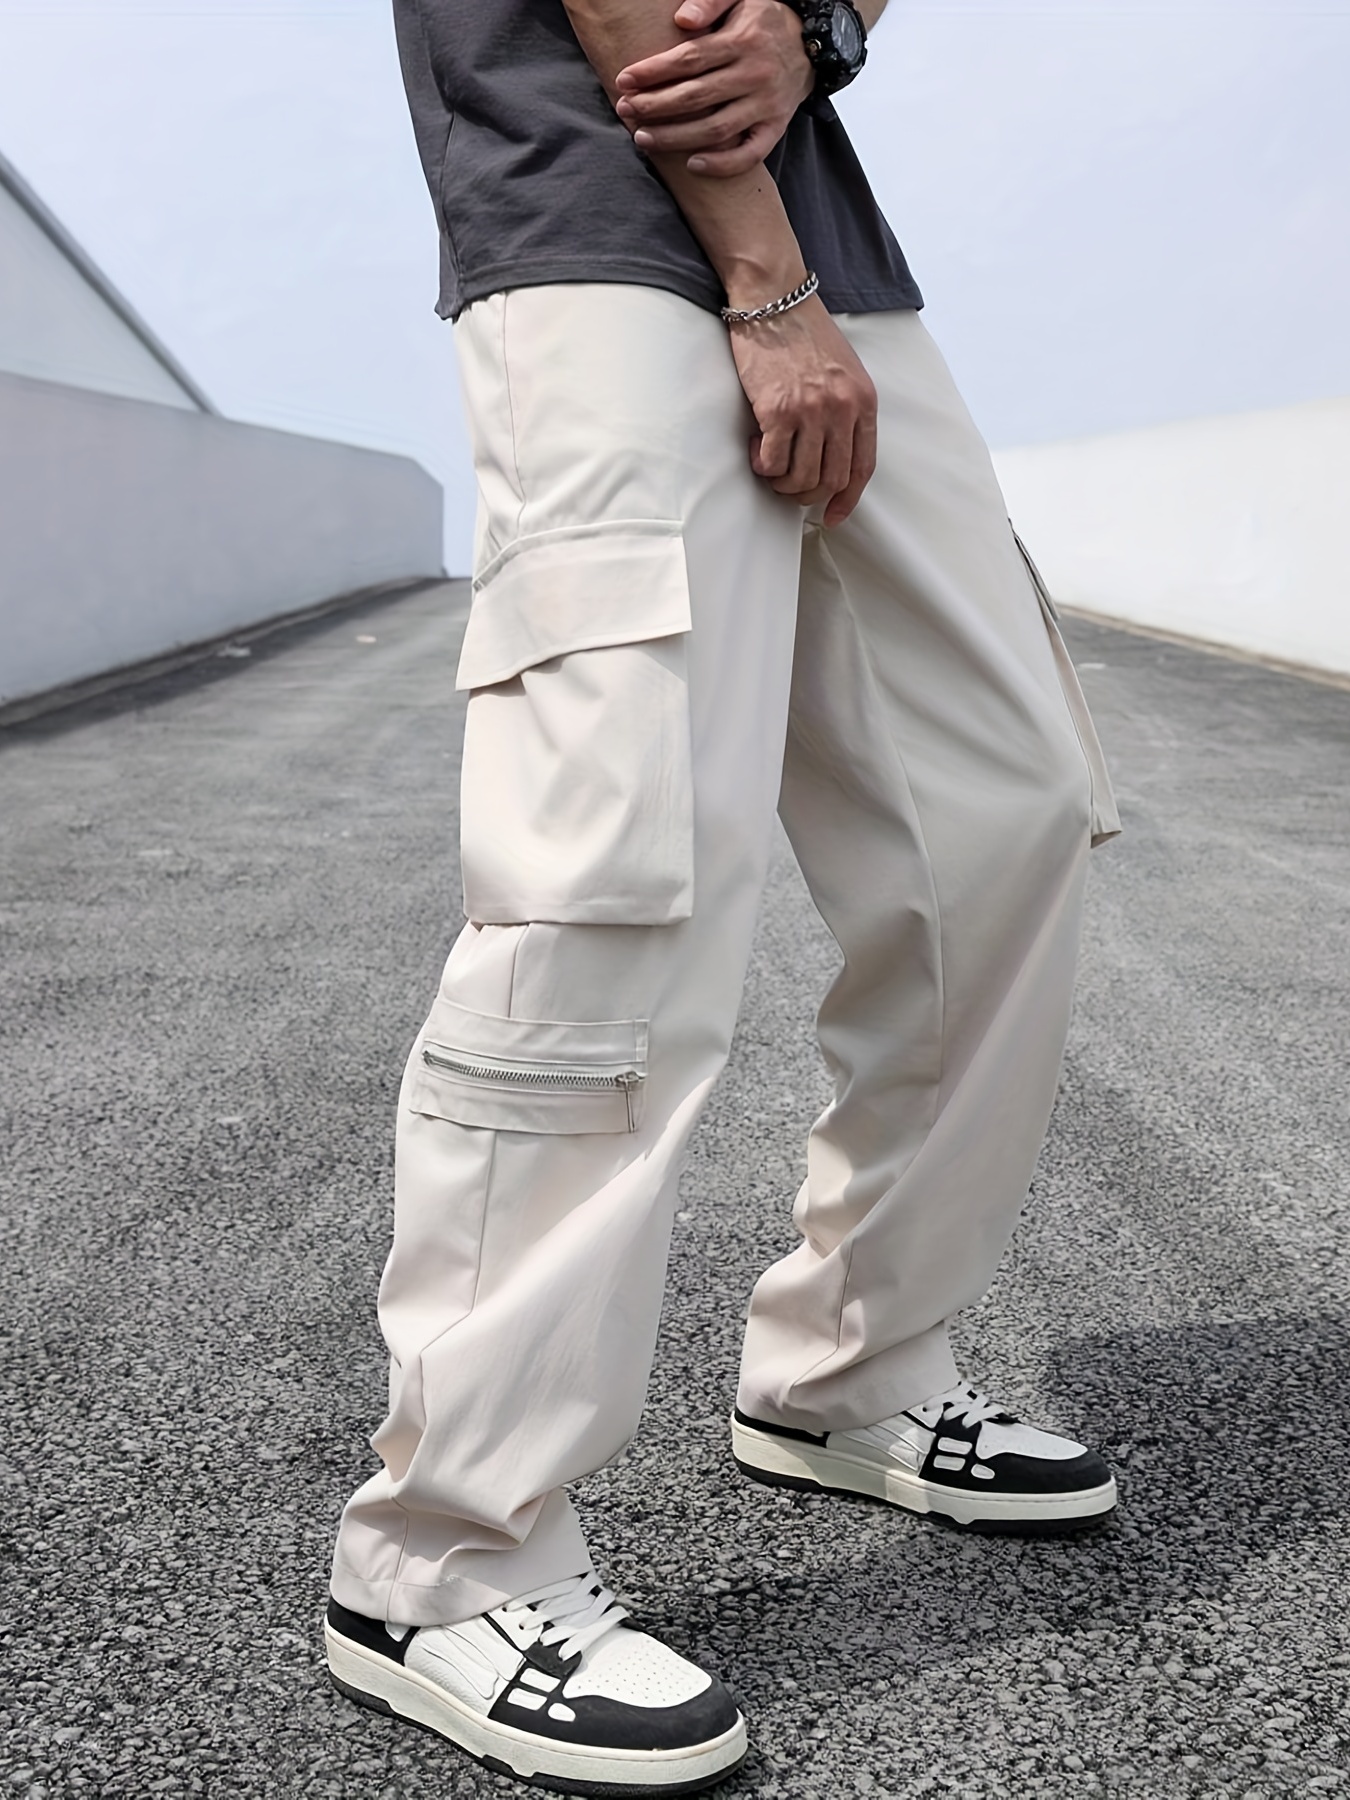 Pantalones de trabajo tipo cargo para hombre, cómodos, casuales, holgados,  estilo cargo, tela Ripstop, con bolsillos